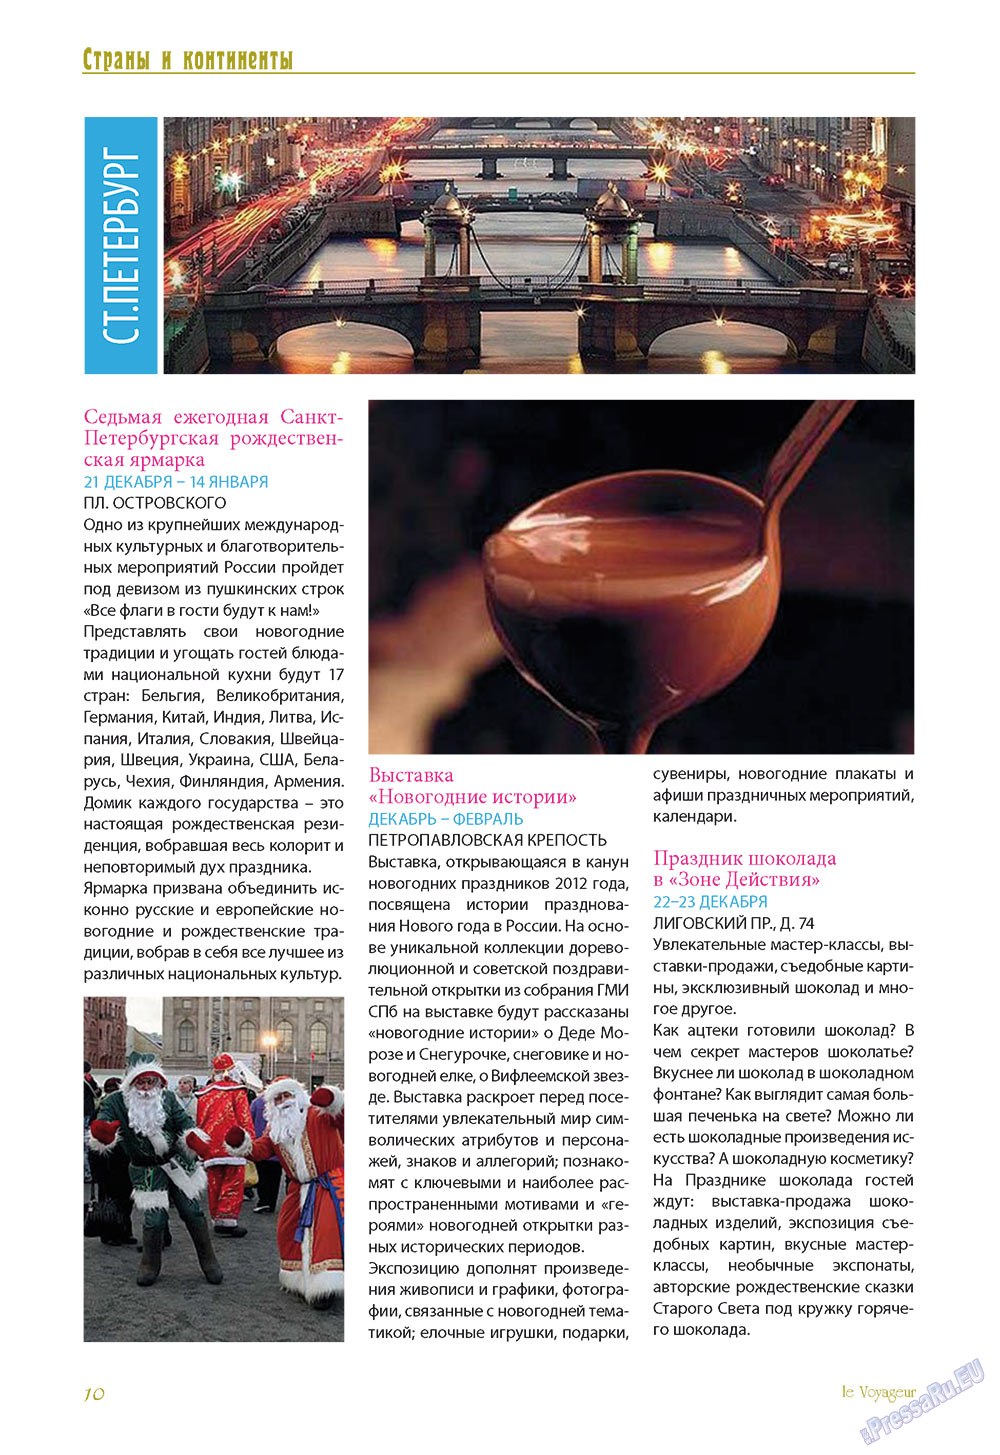 Le Voyageur (журнал). 2012 год, номер 24, стр. 12